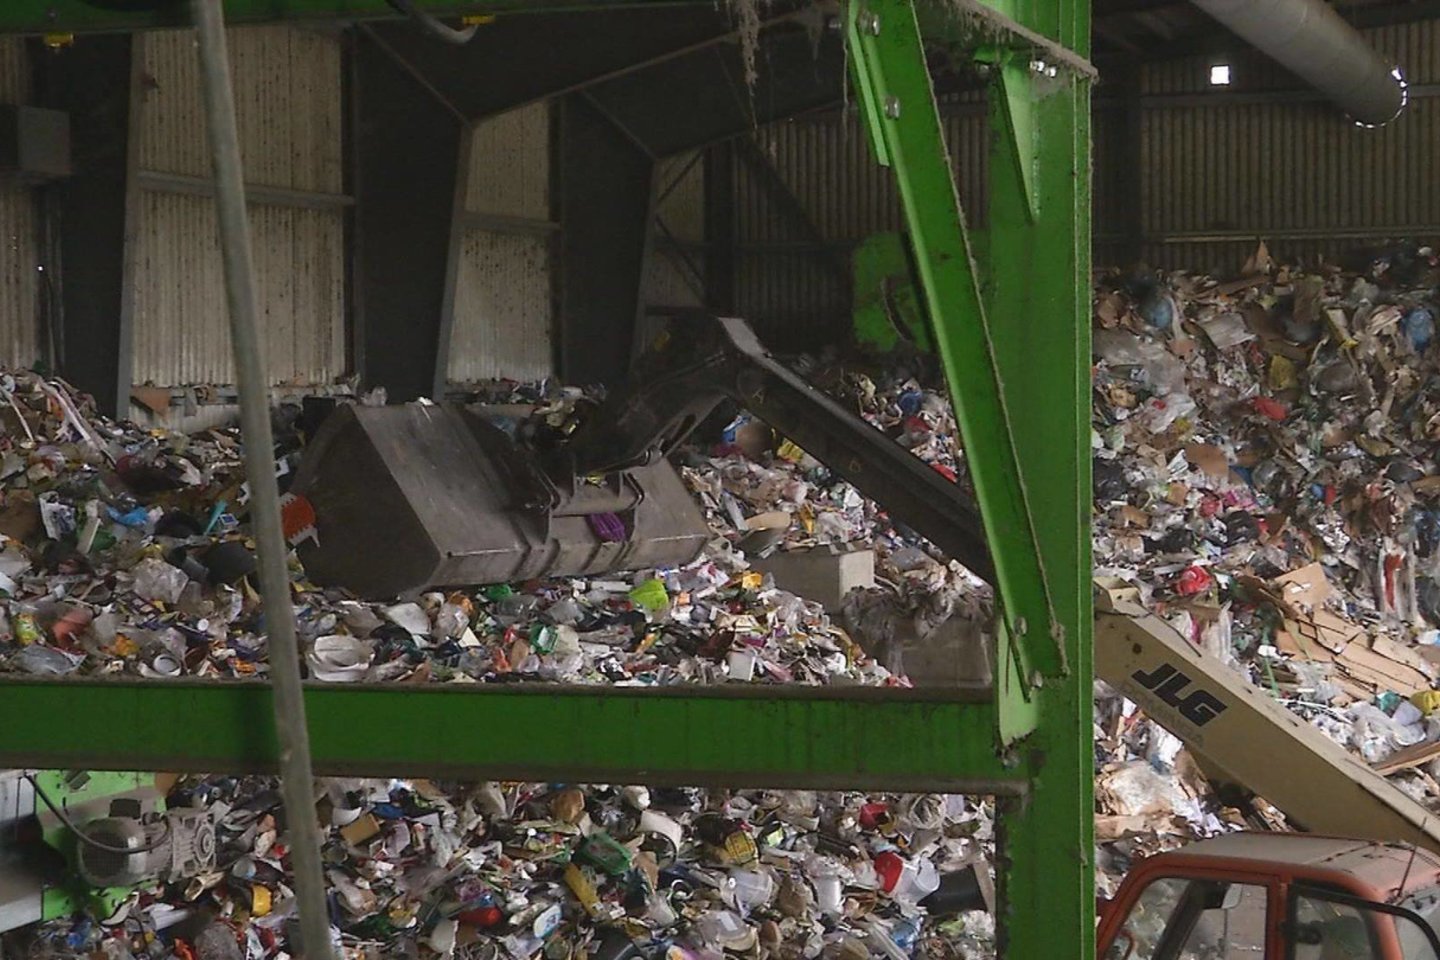  Visos surinktos gyventojų atliekos vežamos į atliekų surinkančių įmonių rūšiavimo centrus.